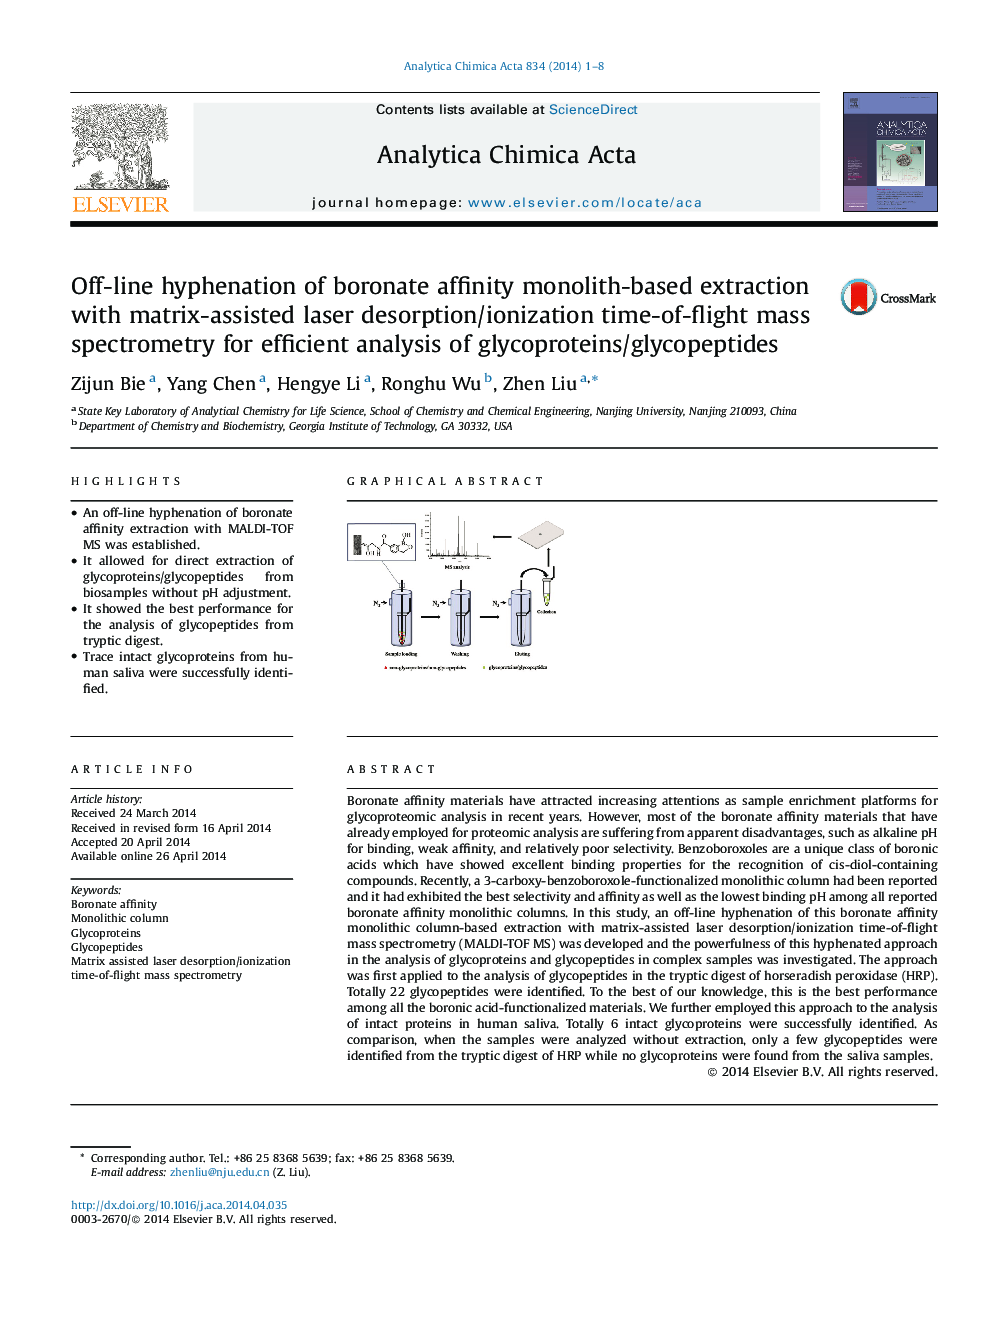 اختلاط مبتنی بر مونولیت وابسته به بورونات با استفاده از اسپکترومتر جرمی زمان رسوب لیزر جذب / یونیزاسیون ماتریکس برای تحلیل کارآمد از گلیکوپروتئین ها / گلیکوپپتید ها 